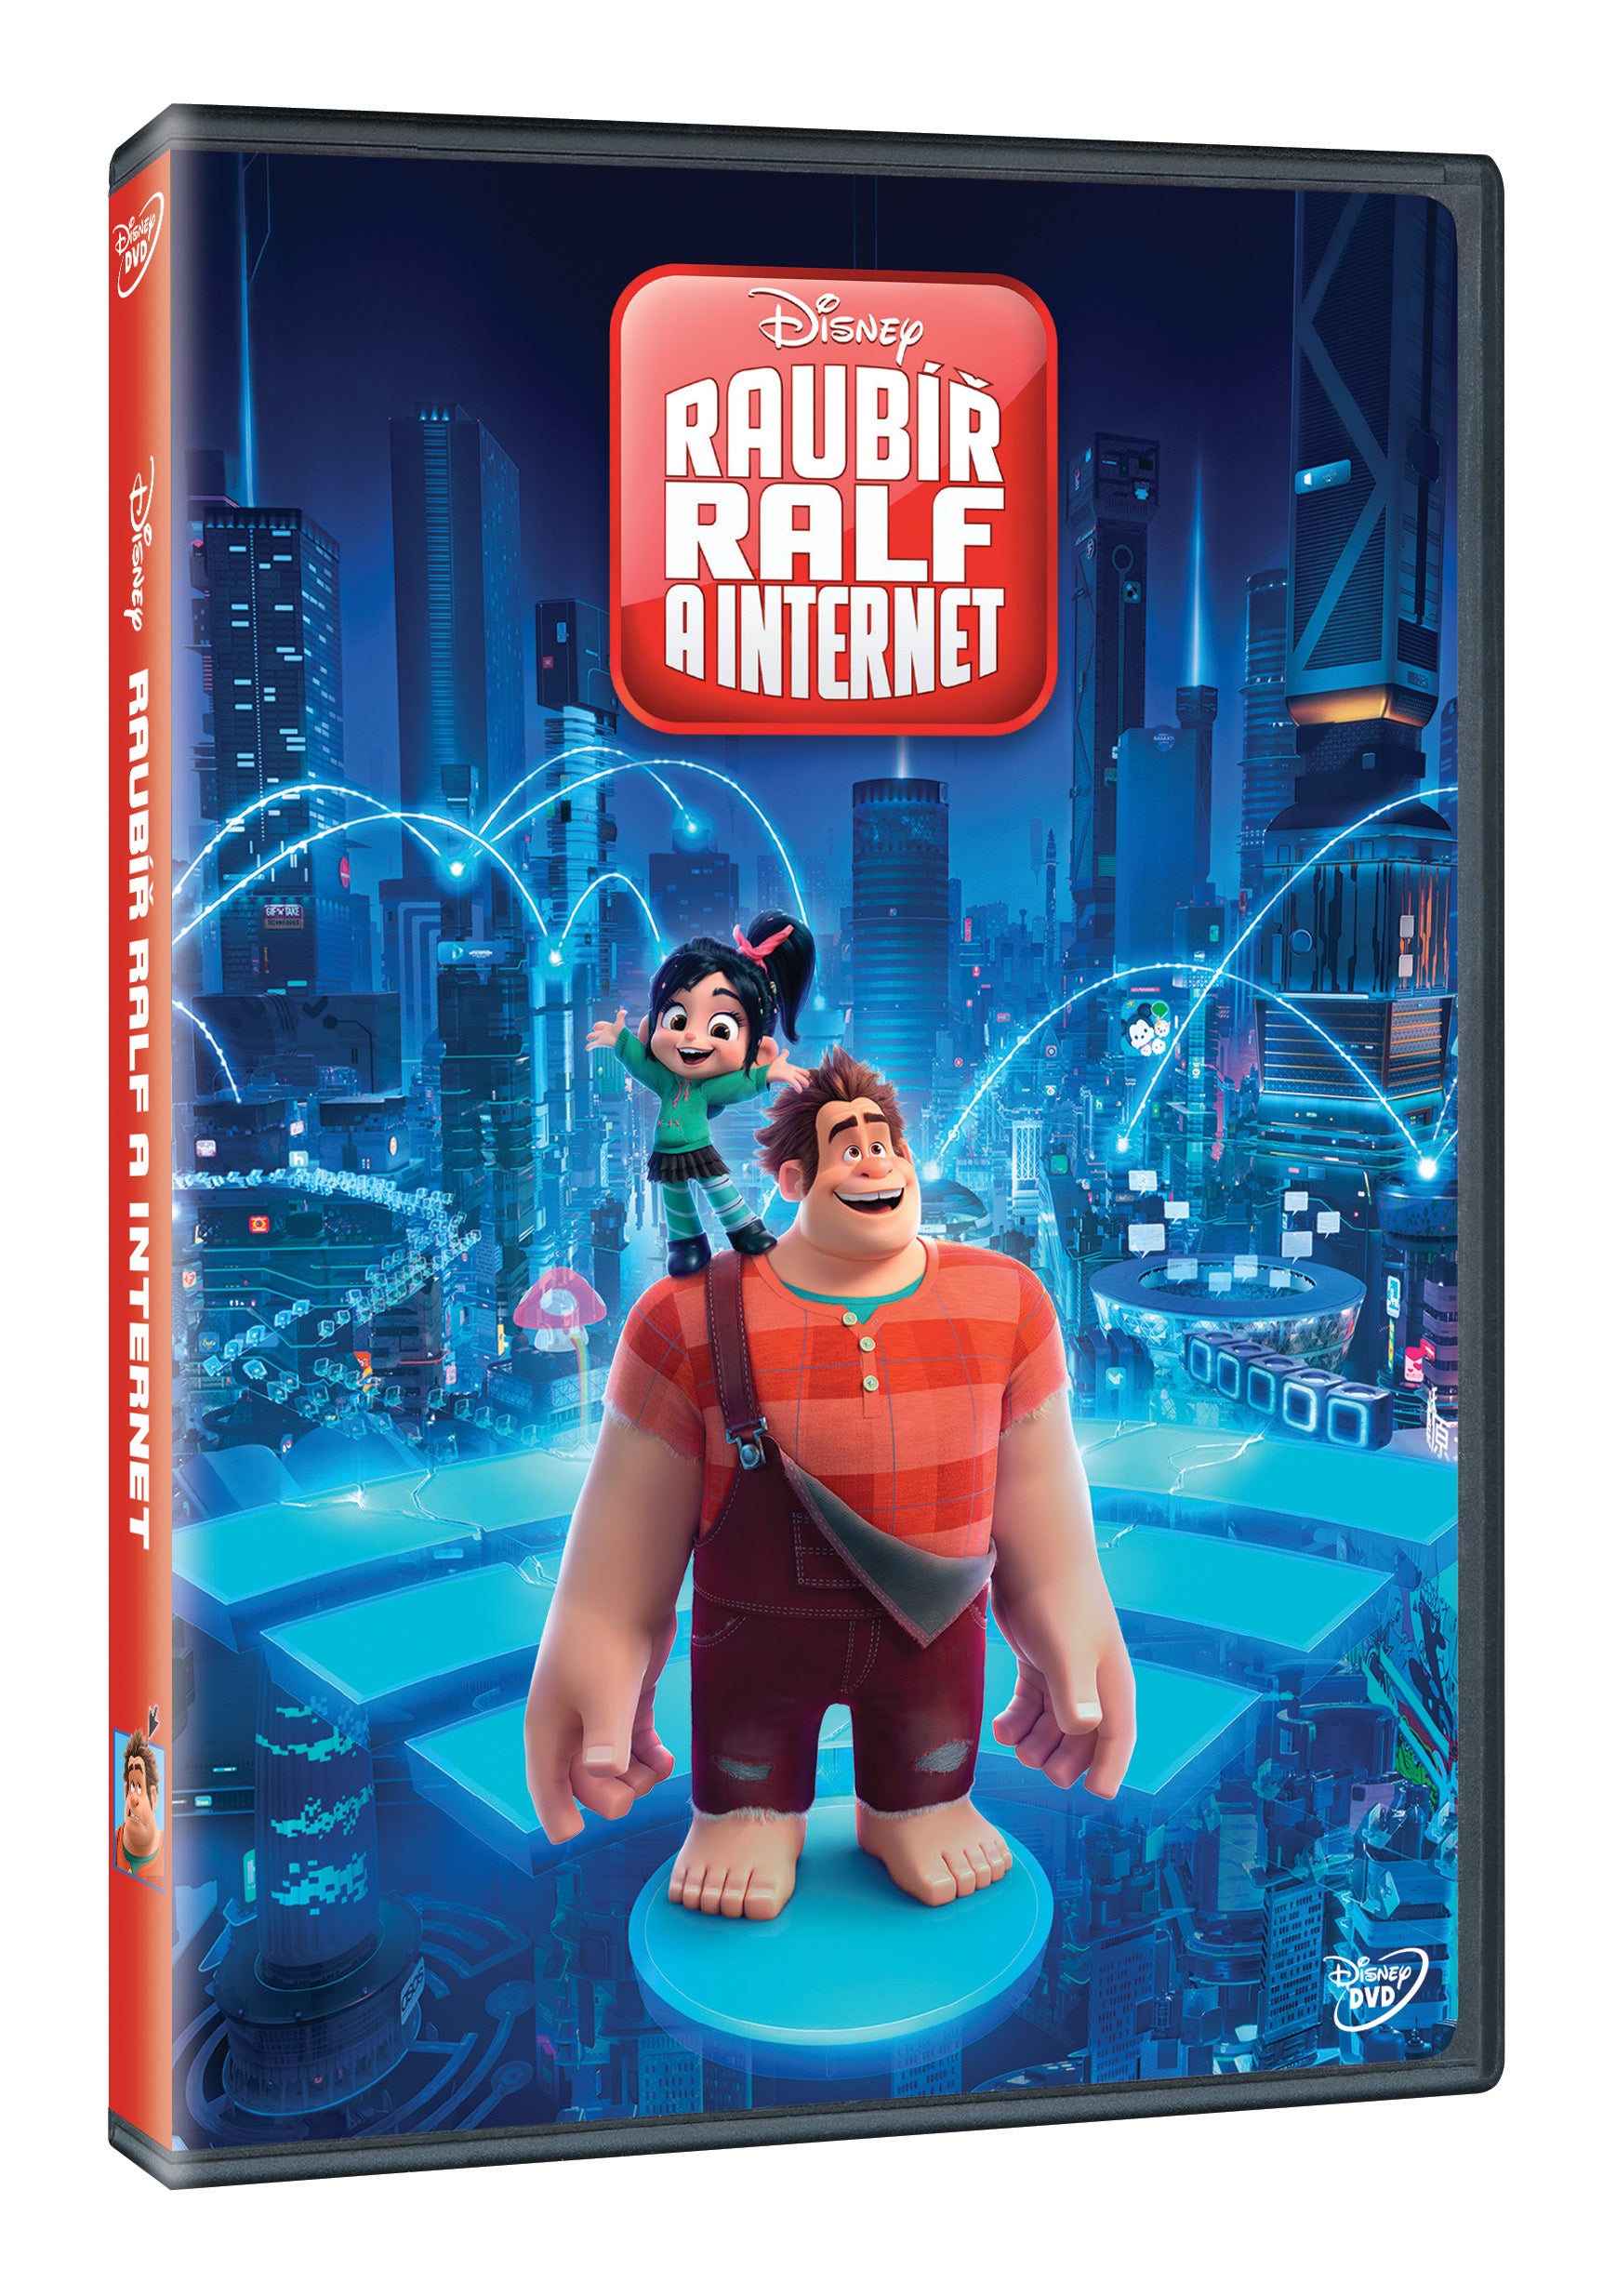 Raubir Ralf a internet DVD / Ralph Breaks the Internet